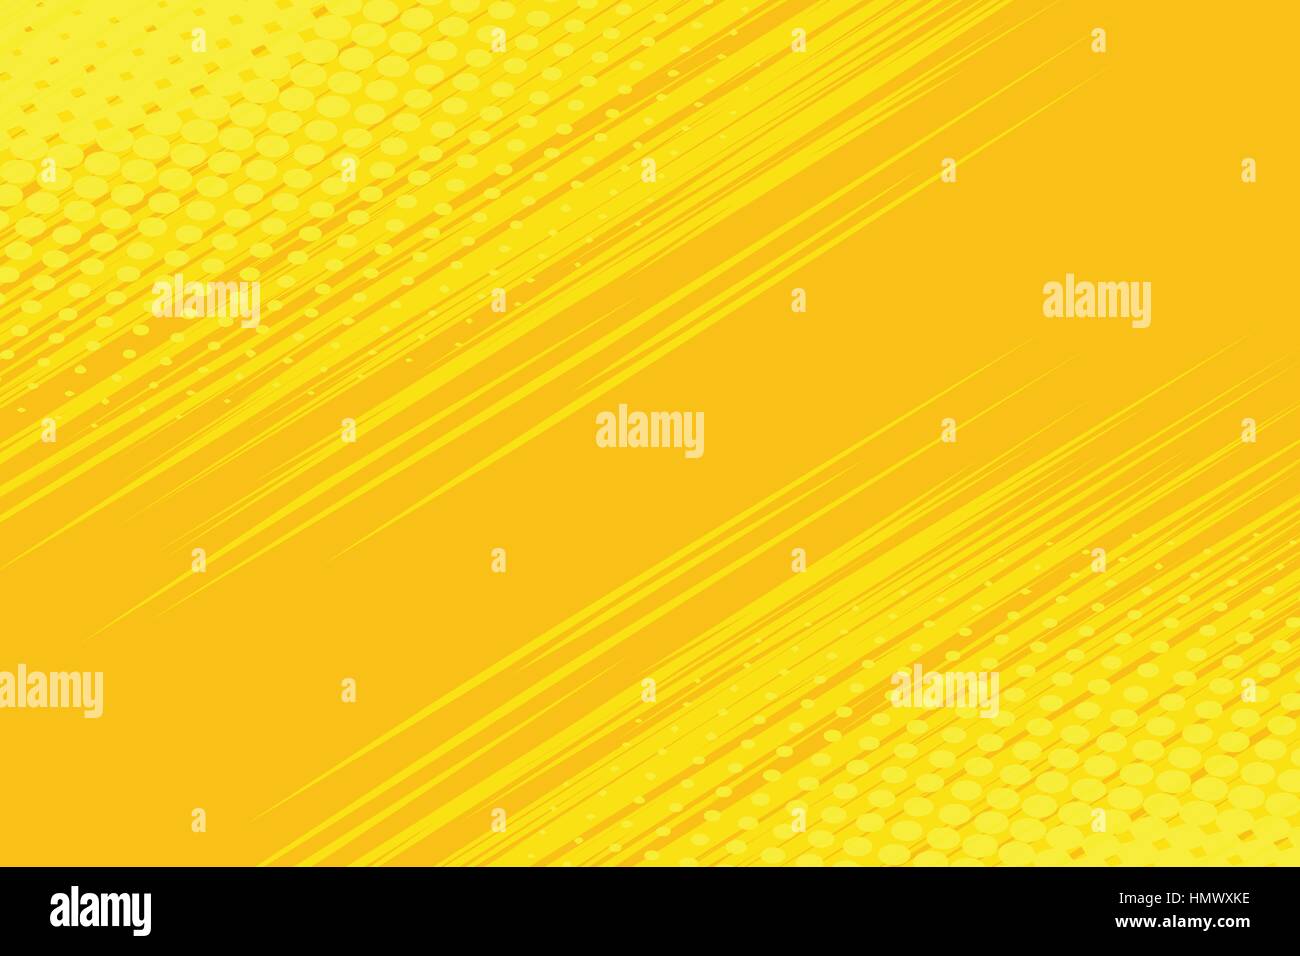 Le côté jaune berline avec effet de demi-teinte Illustration de Vecteur